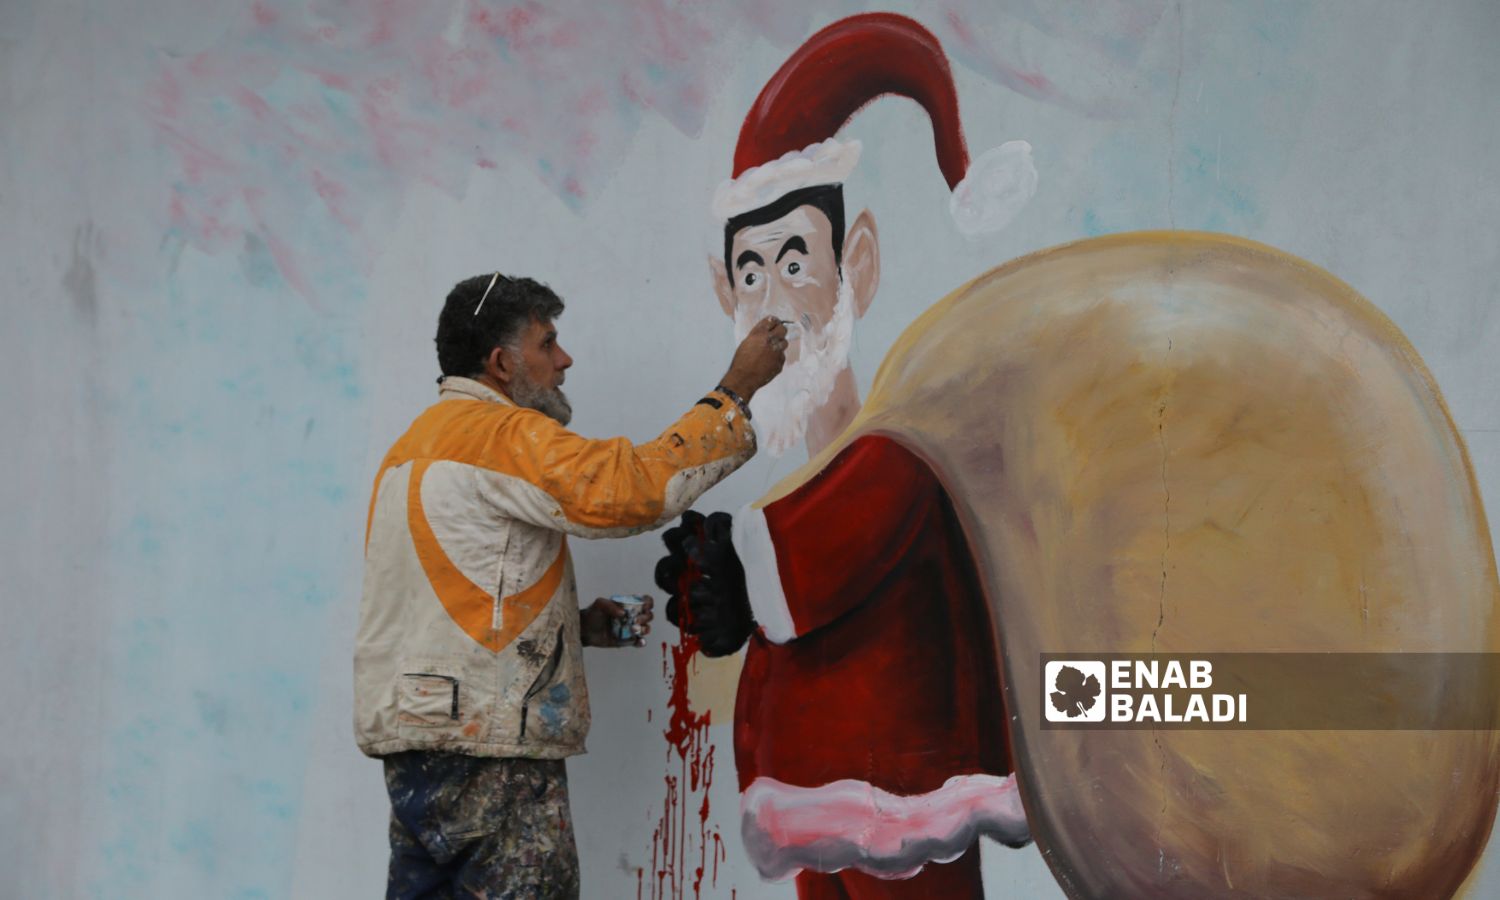 الرسام عزيز أسمر وأنيس حمدون، يرسمان جدارية بمناسبة رأس السنة الميلادية، تظهر بشار الأسد بشخصية بابا نويل وهو يوزع حبوب الكبتاجون في مدينة بنش - 25 كانون الأول 2022 (عنب بلدي / أنس الخولي)